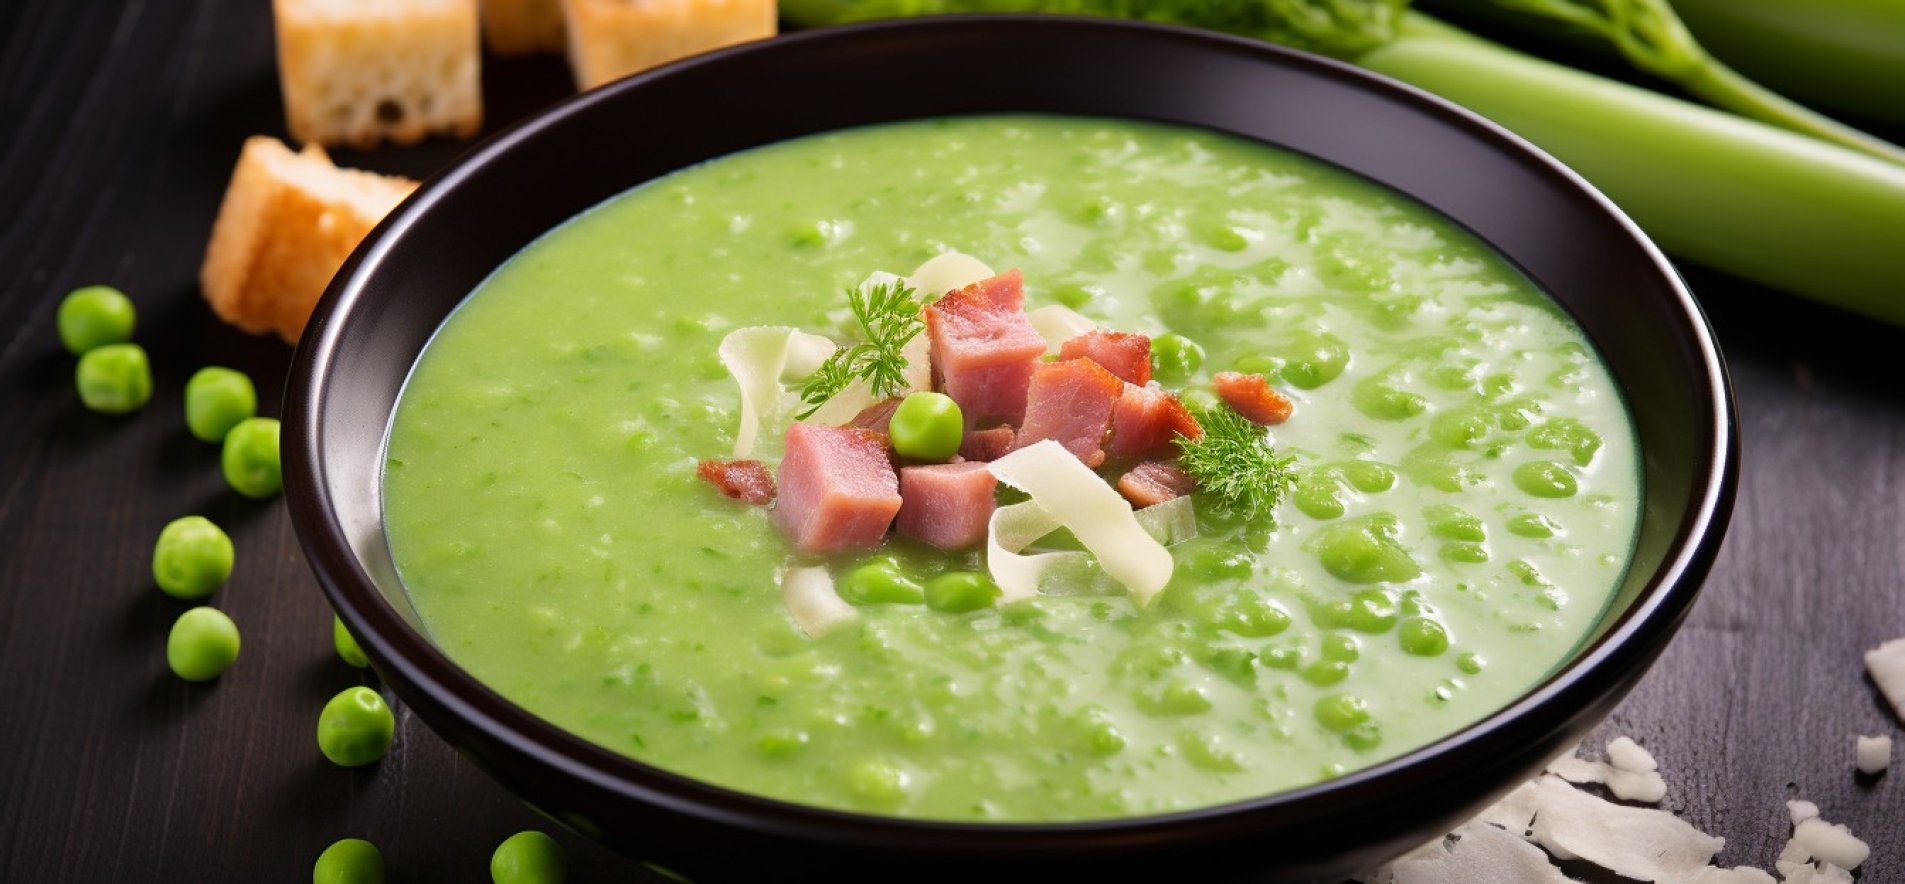 Куриный суп с зеленым горошком и вермишелью